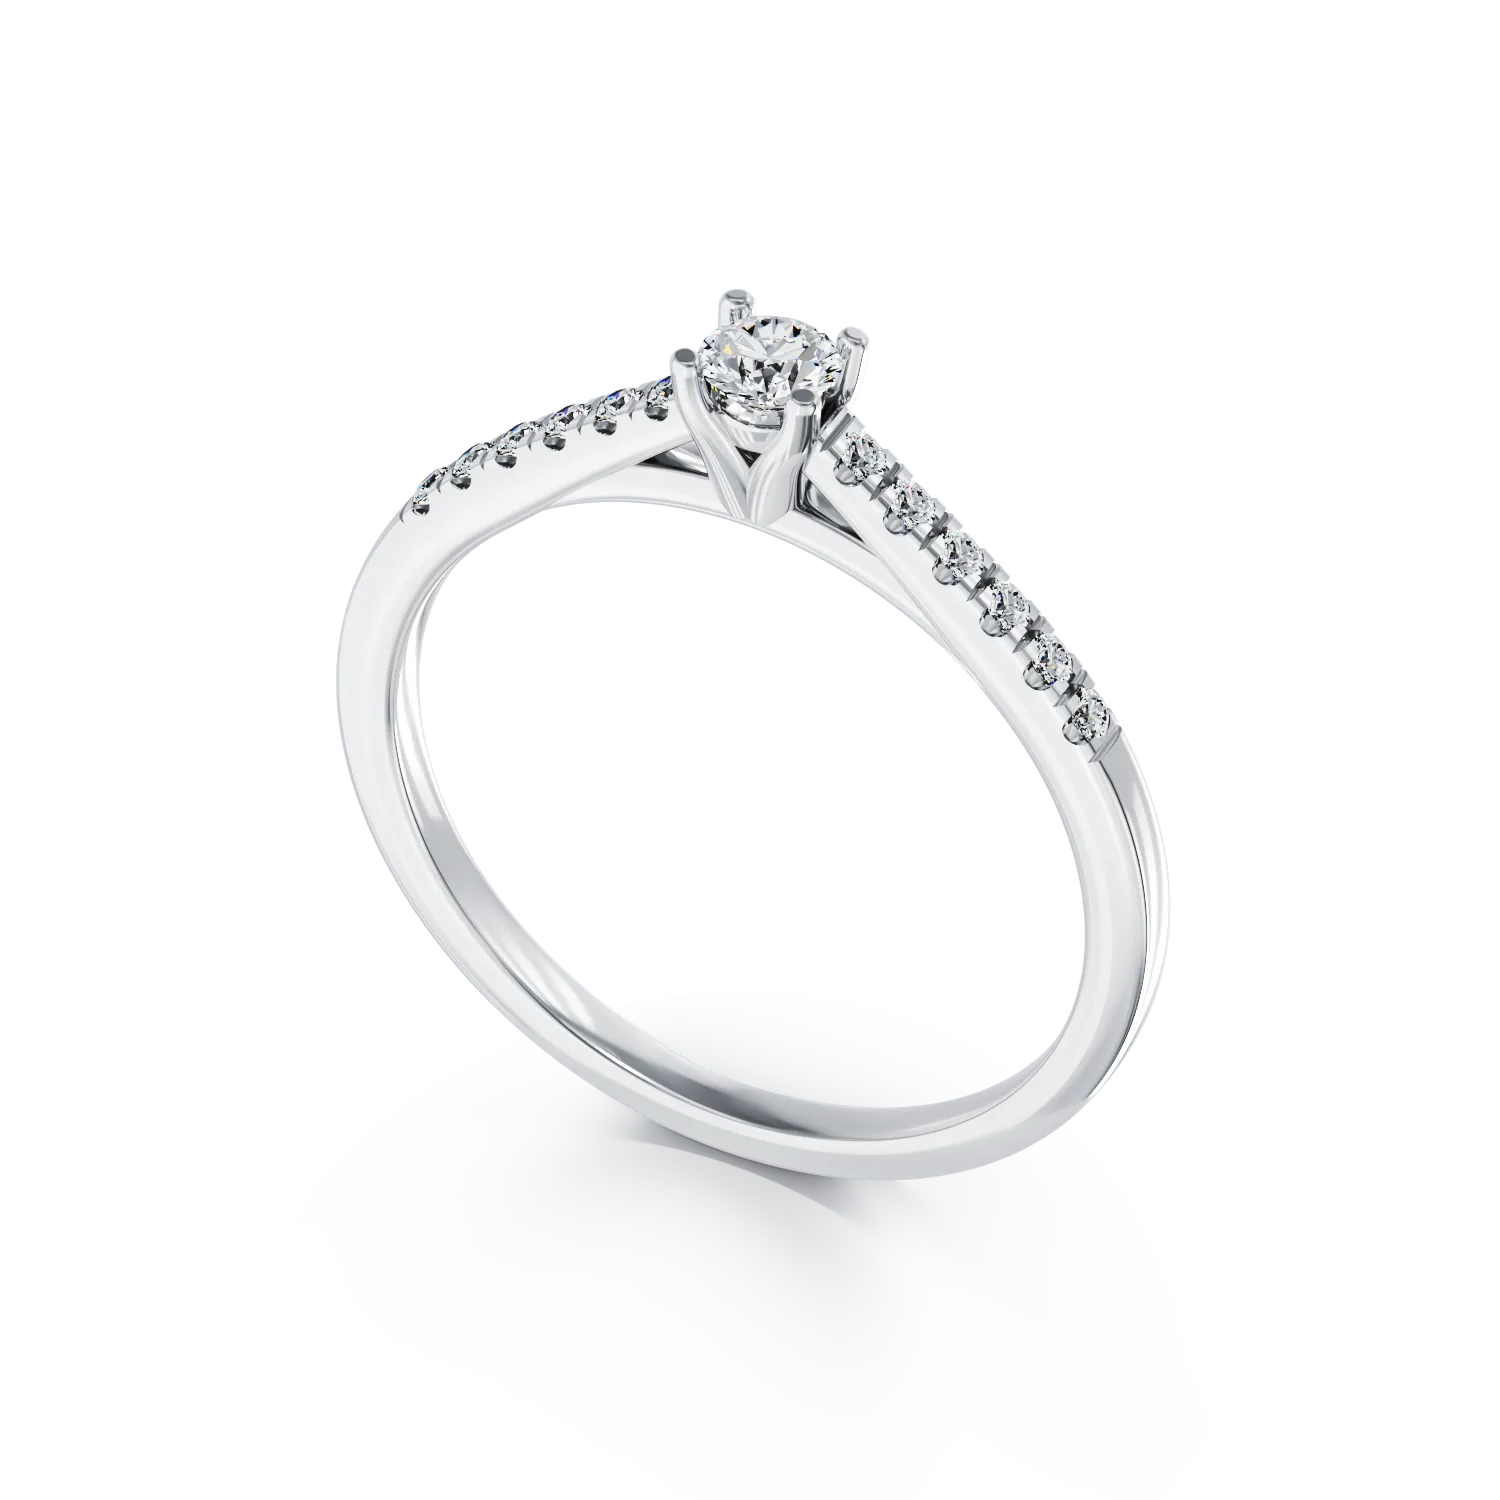 Eljegyzési gyűrű 18K-os fehér aranyból 0,25ct gyémánttal és 0,012ct gyémánttal. Gramm: 2,9